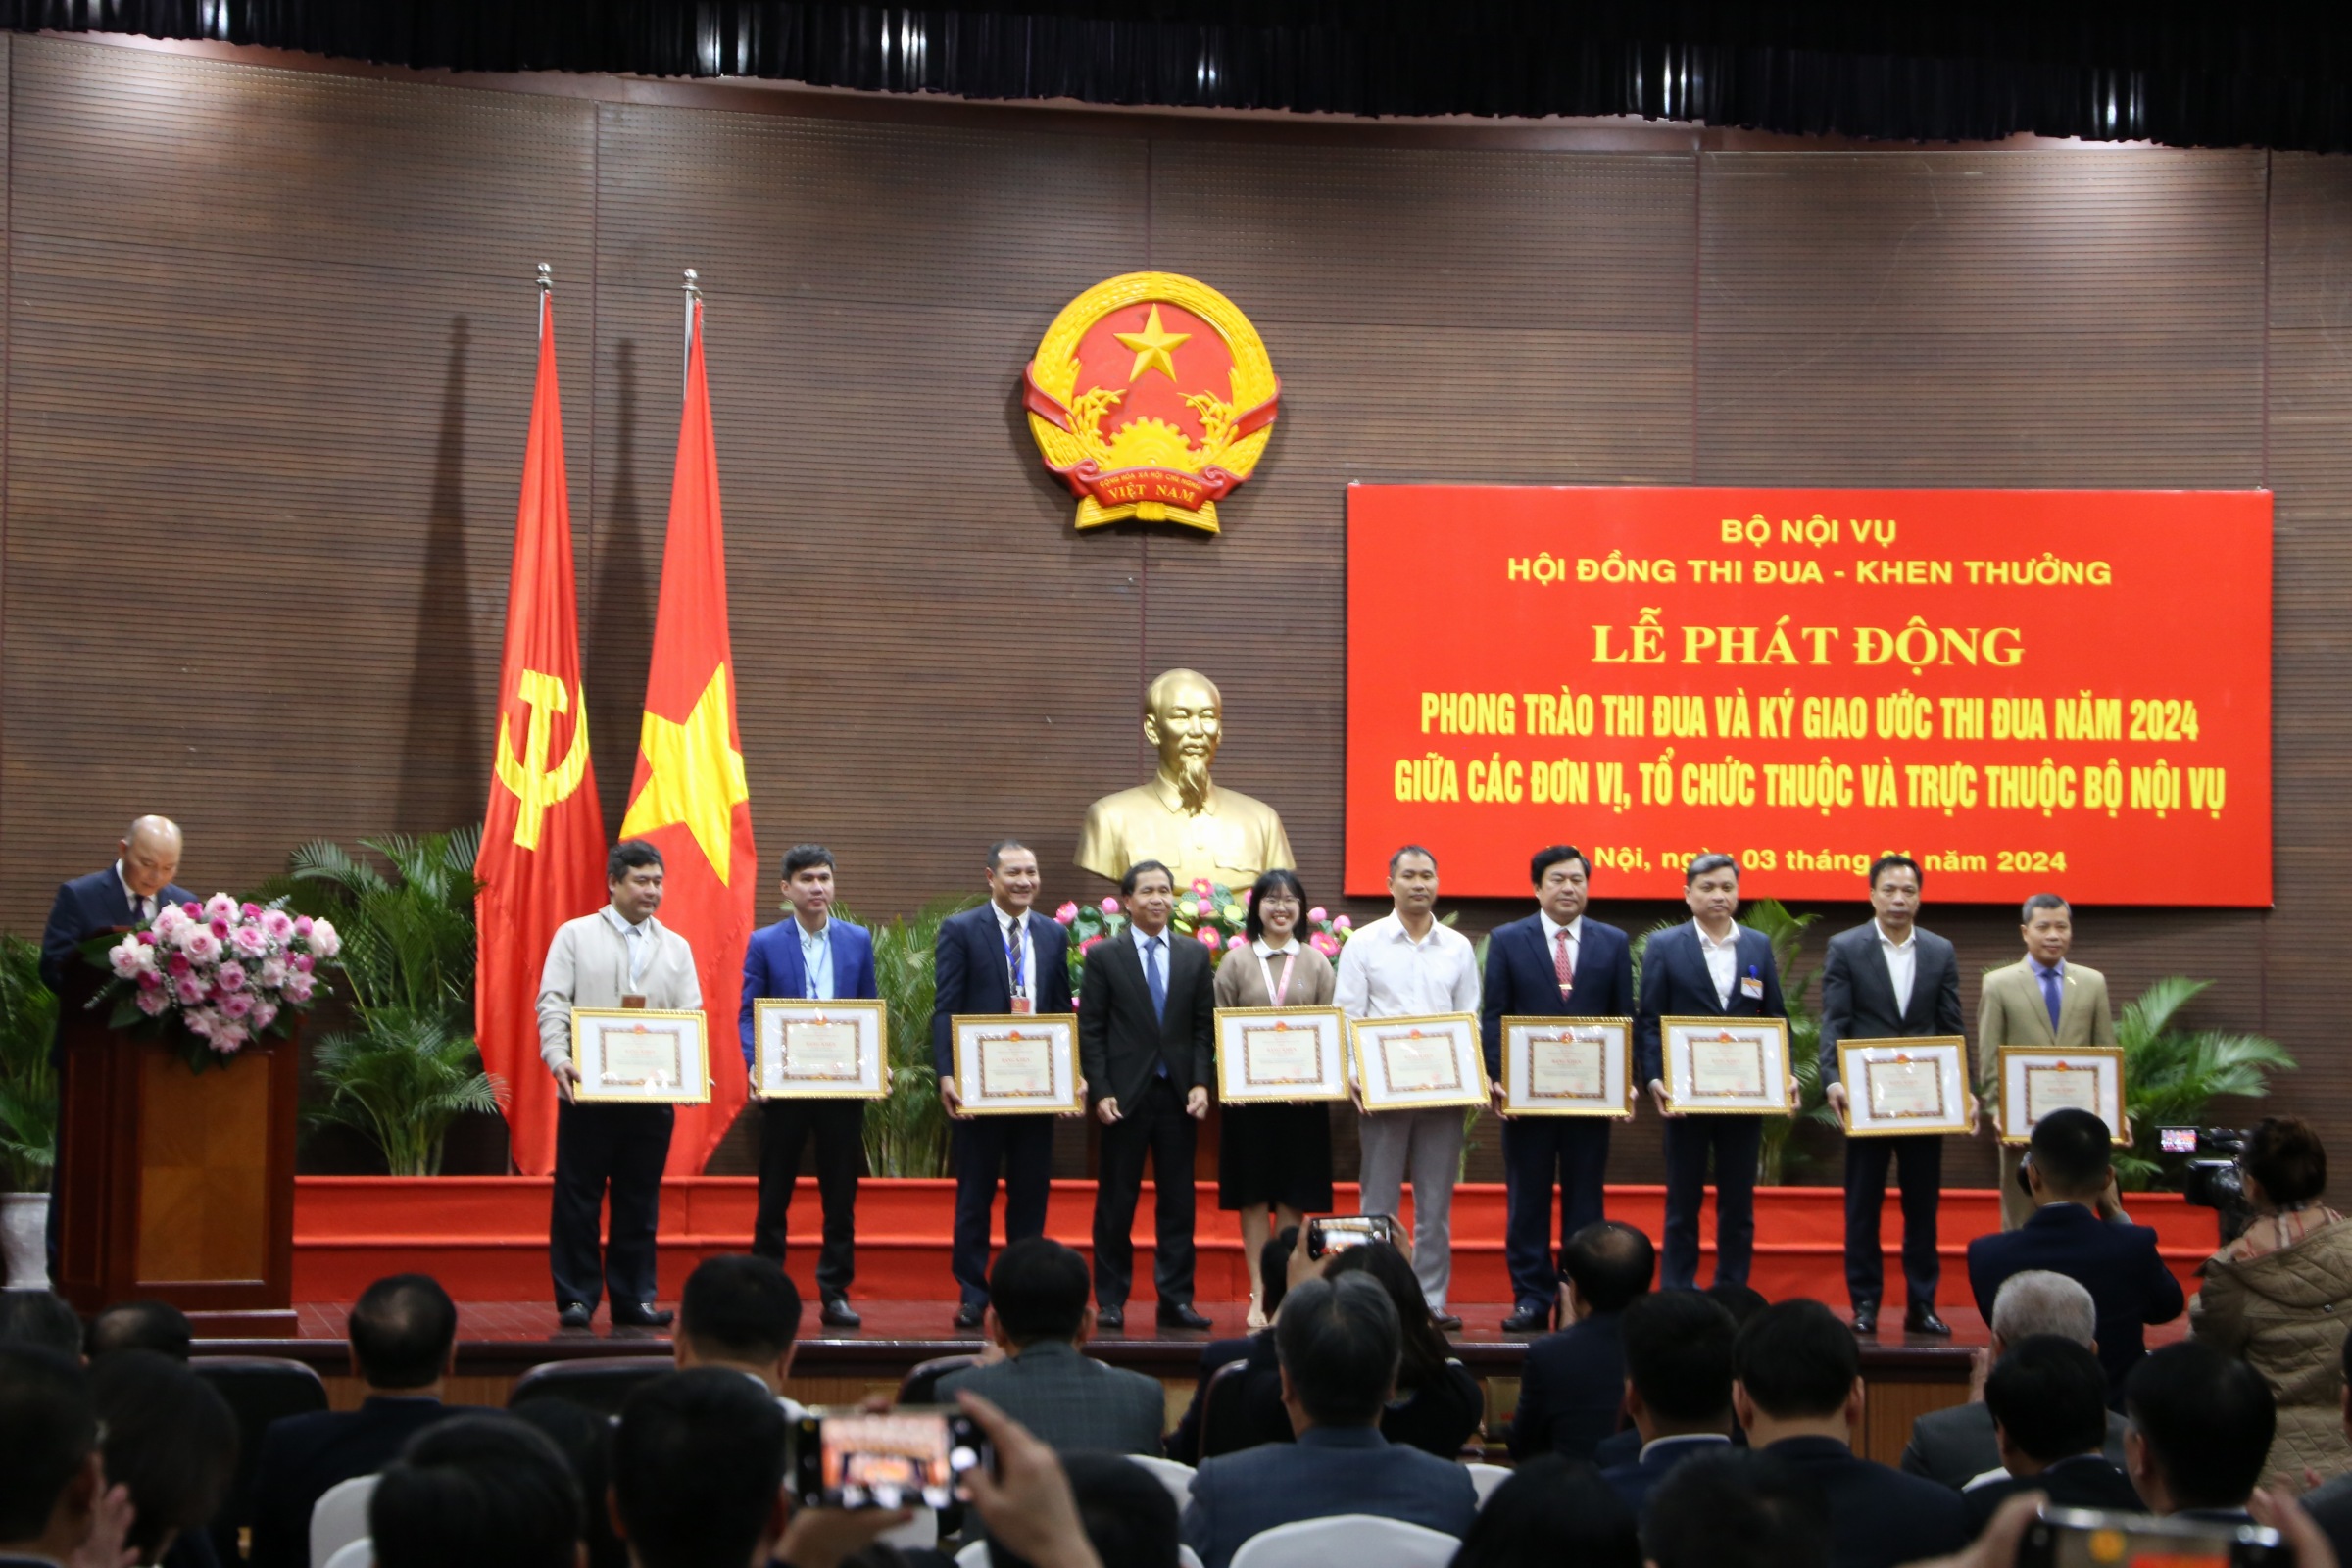 Thứ trưởng Triệu Văn Cường trao Bằng khen của Bộ trưởng Bộ Nội vụ cho các cá nhân đã có thành tích trong phong trào thi đua hoàn thành Cơ sở dữ liệu.